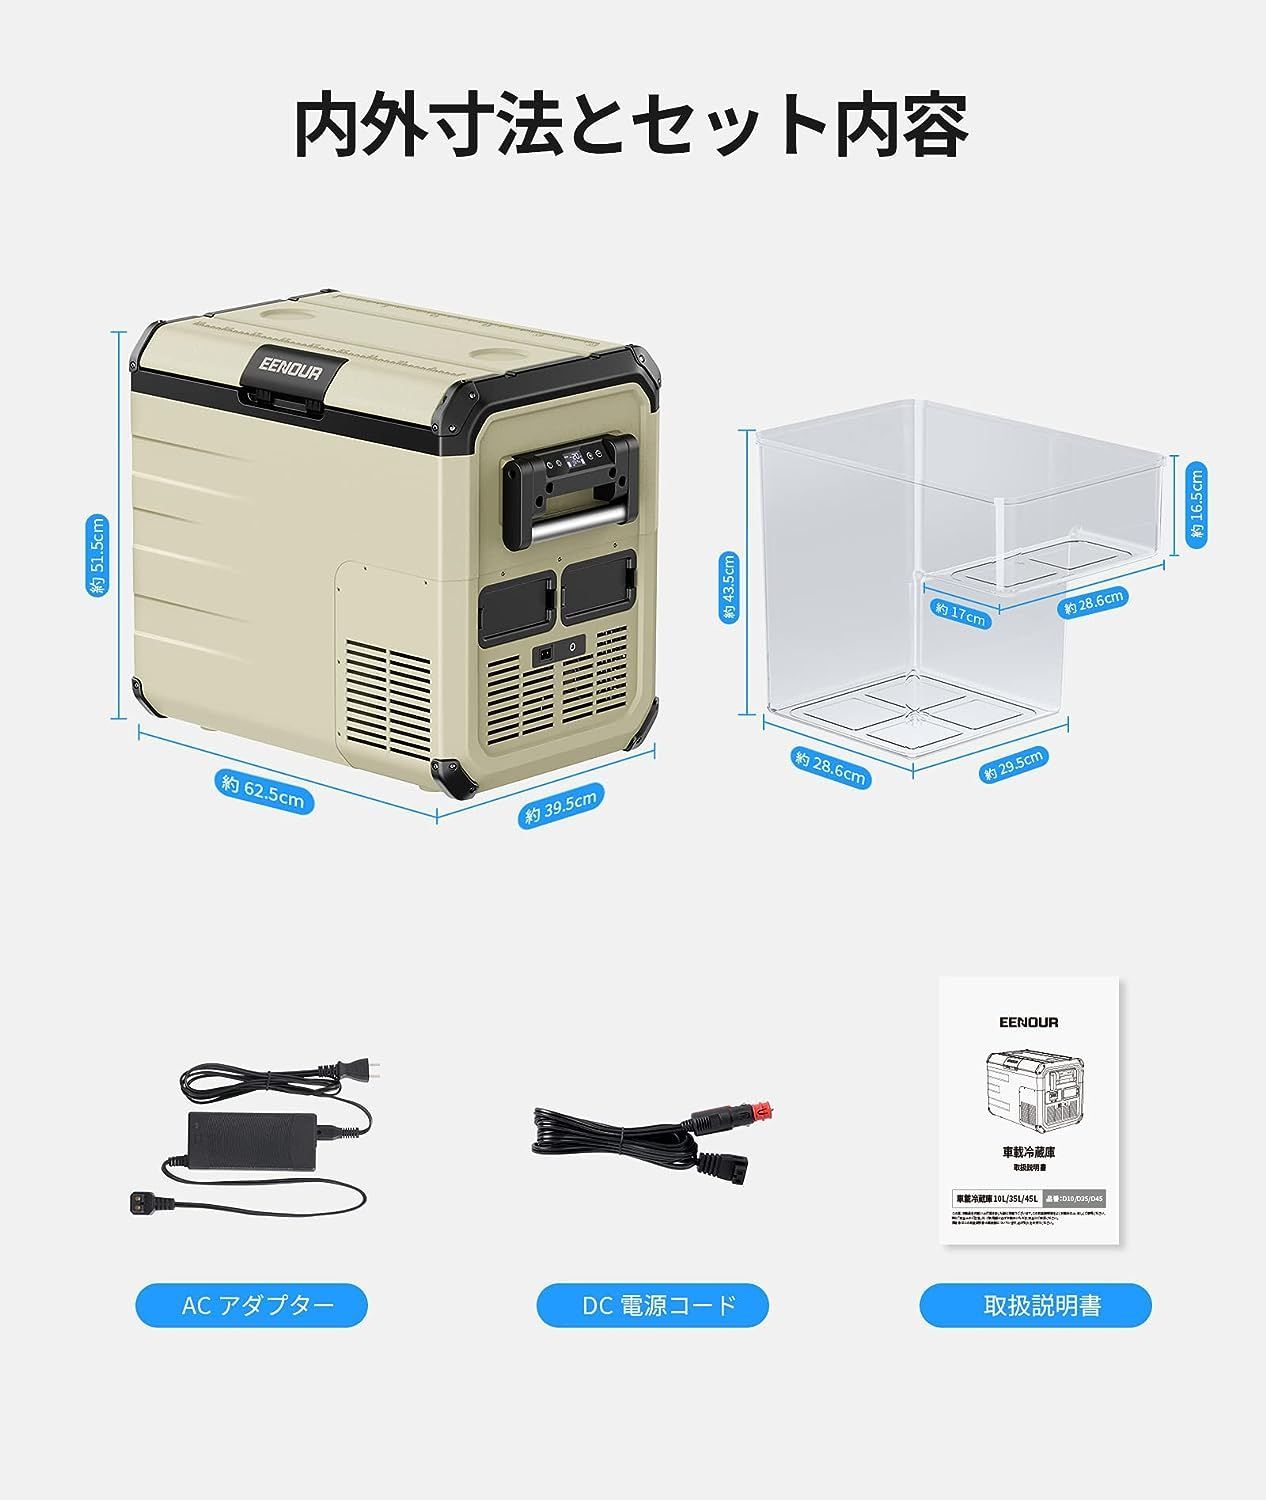 EENOUR ポータブル冷凍冷蔵庫D45 11.9ガロン(45 L) コンプレッサー ...